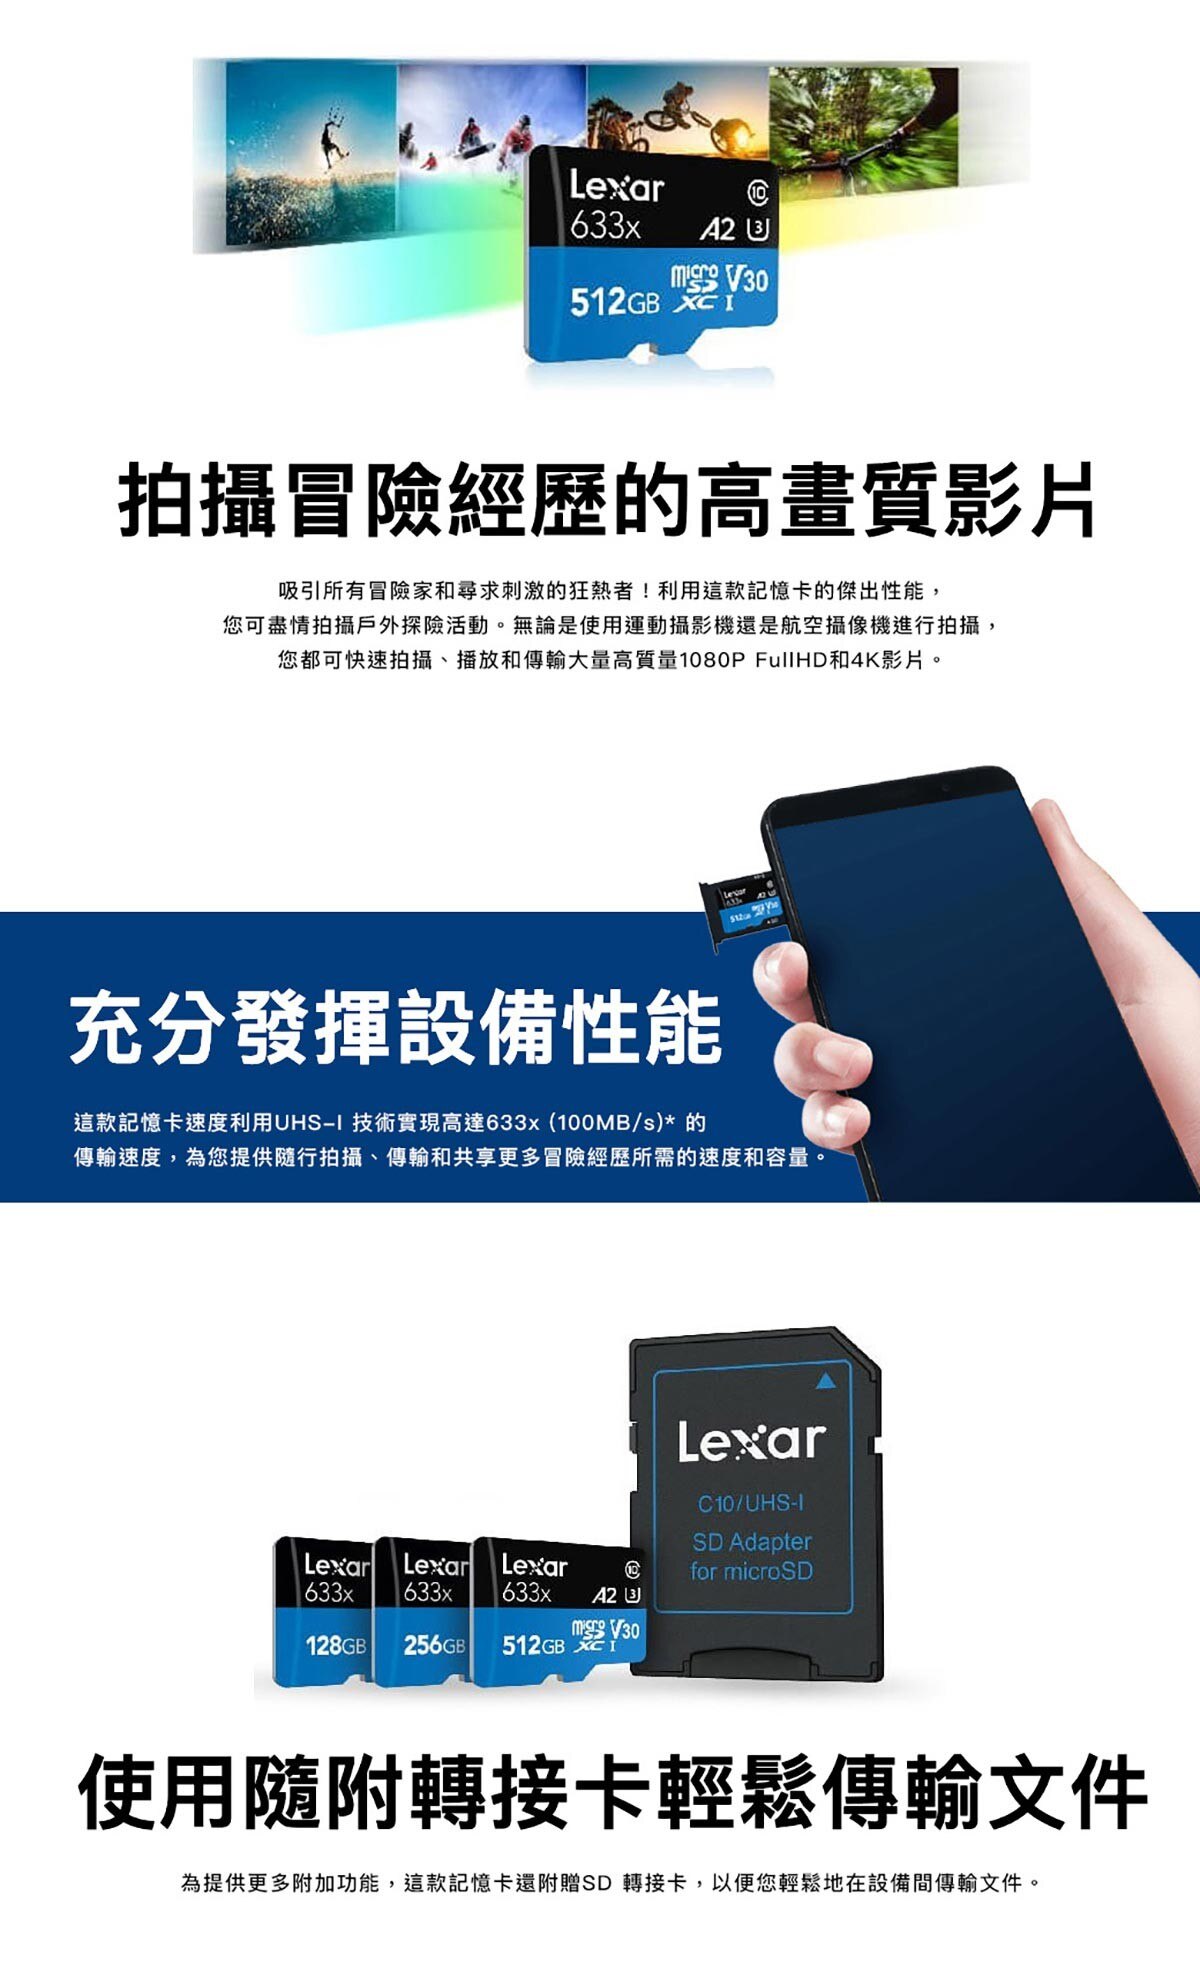 LEXAR 633x 512G記憶卡，讀取速度高達 100MB/s，寫入速度高達 70MB/s，快速影片擷取，多容量選擇，適用於平板電腦或智慧型手機，能輕鬆地快速下載或儲存所有您喜愛的媒體檔案。